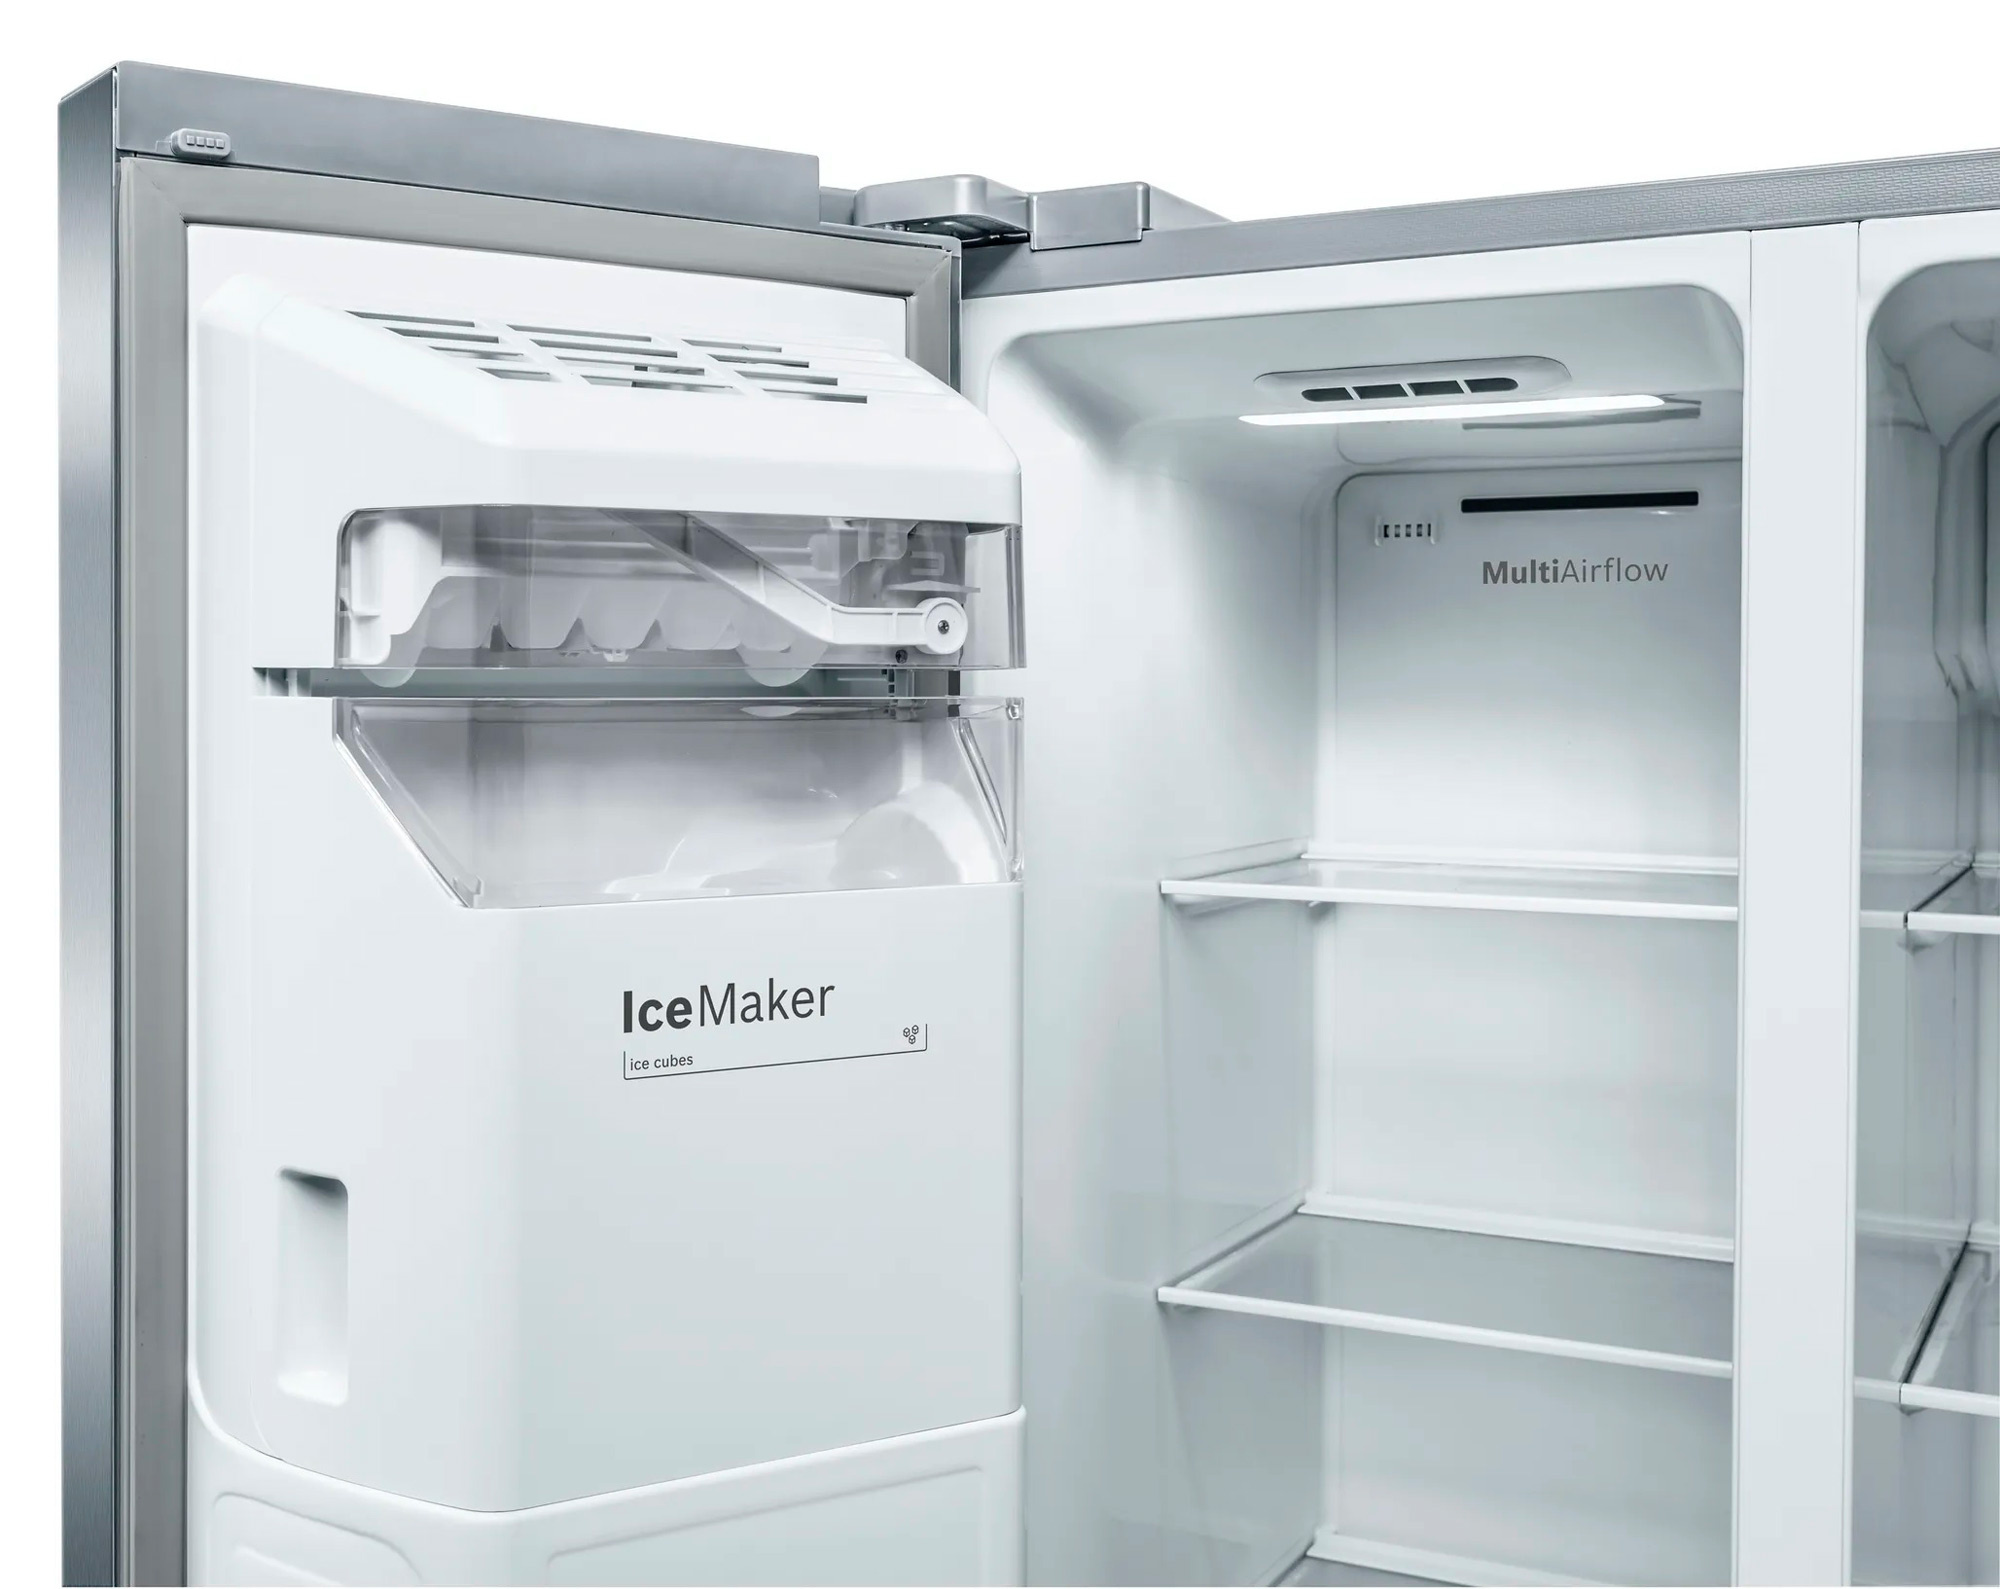 Холодильник Bosch KAI93VI304, нержавеющая сталь 